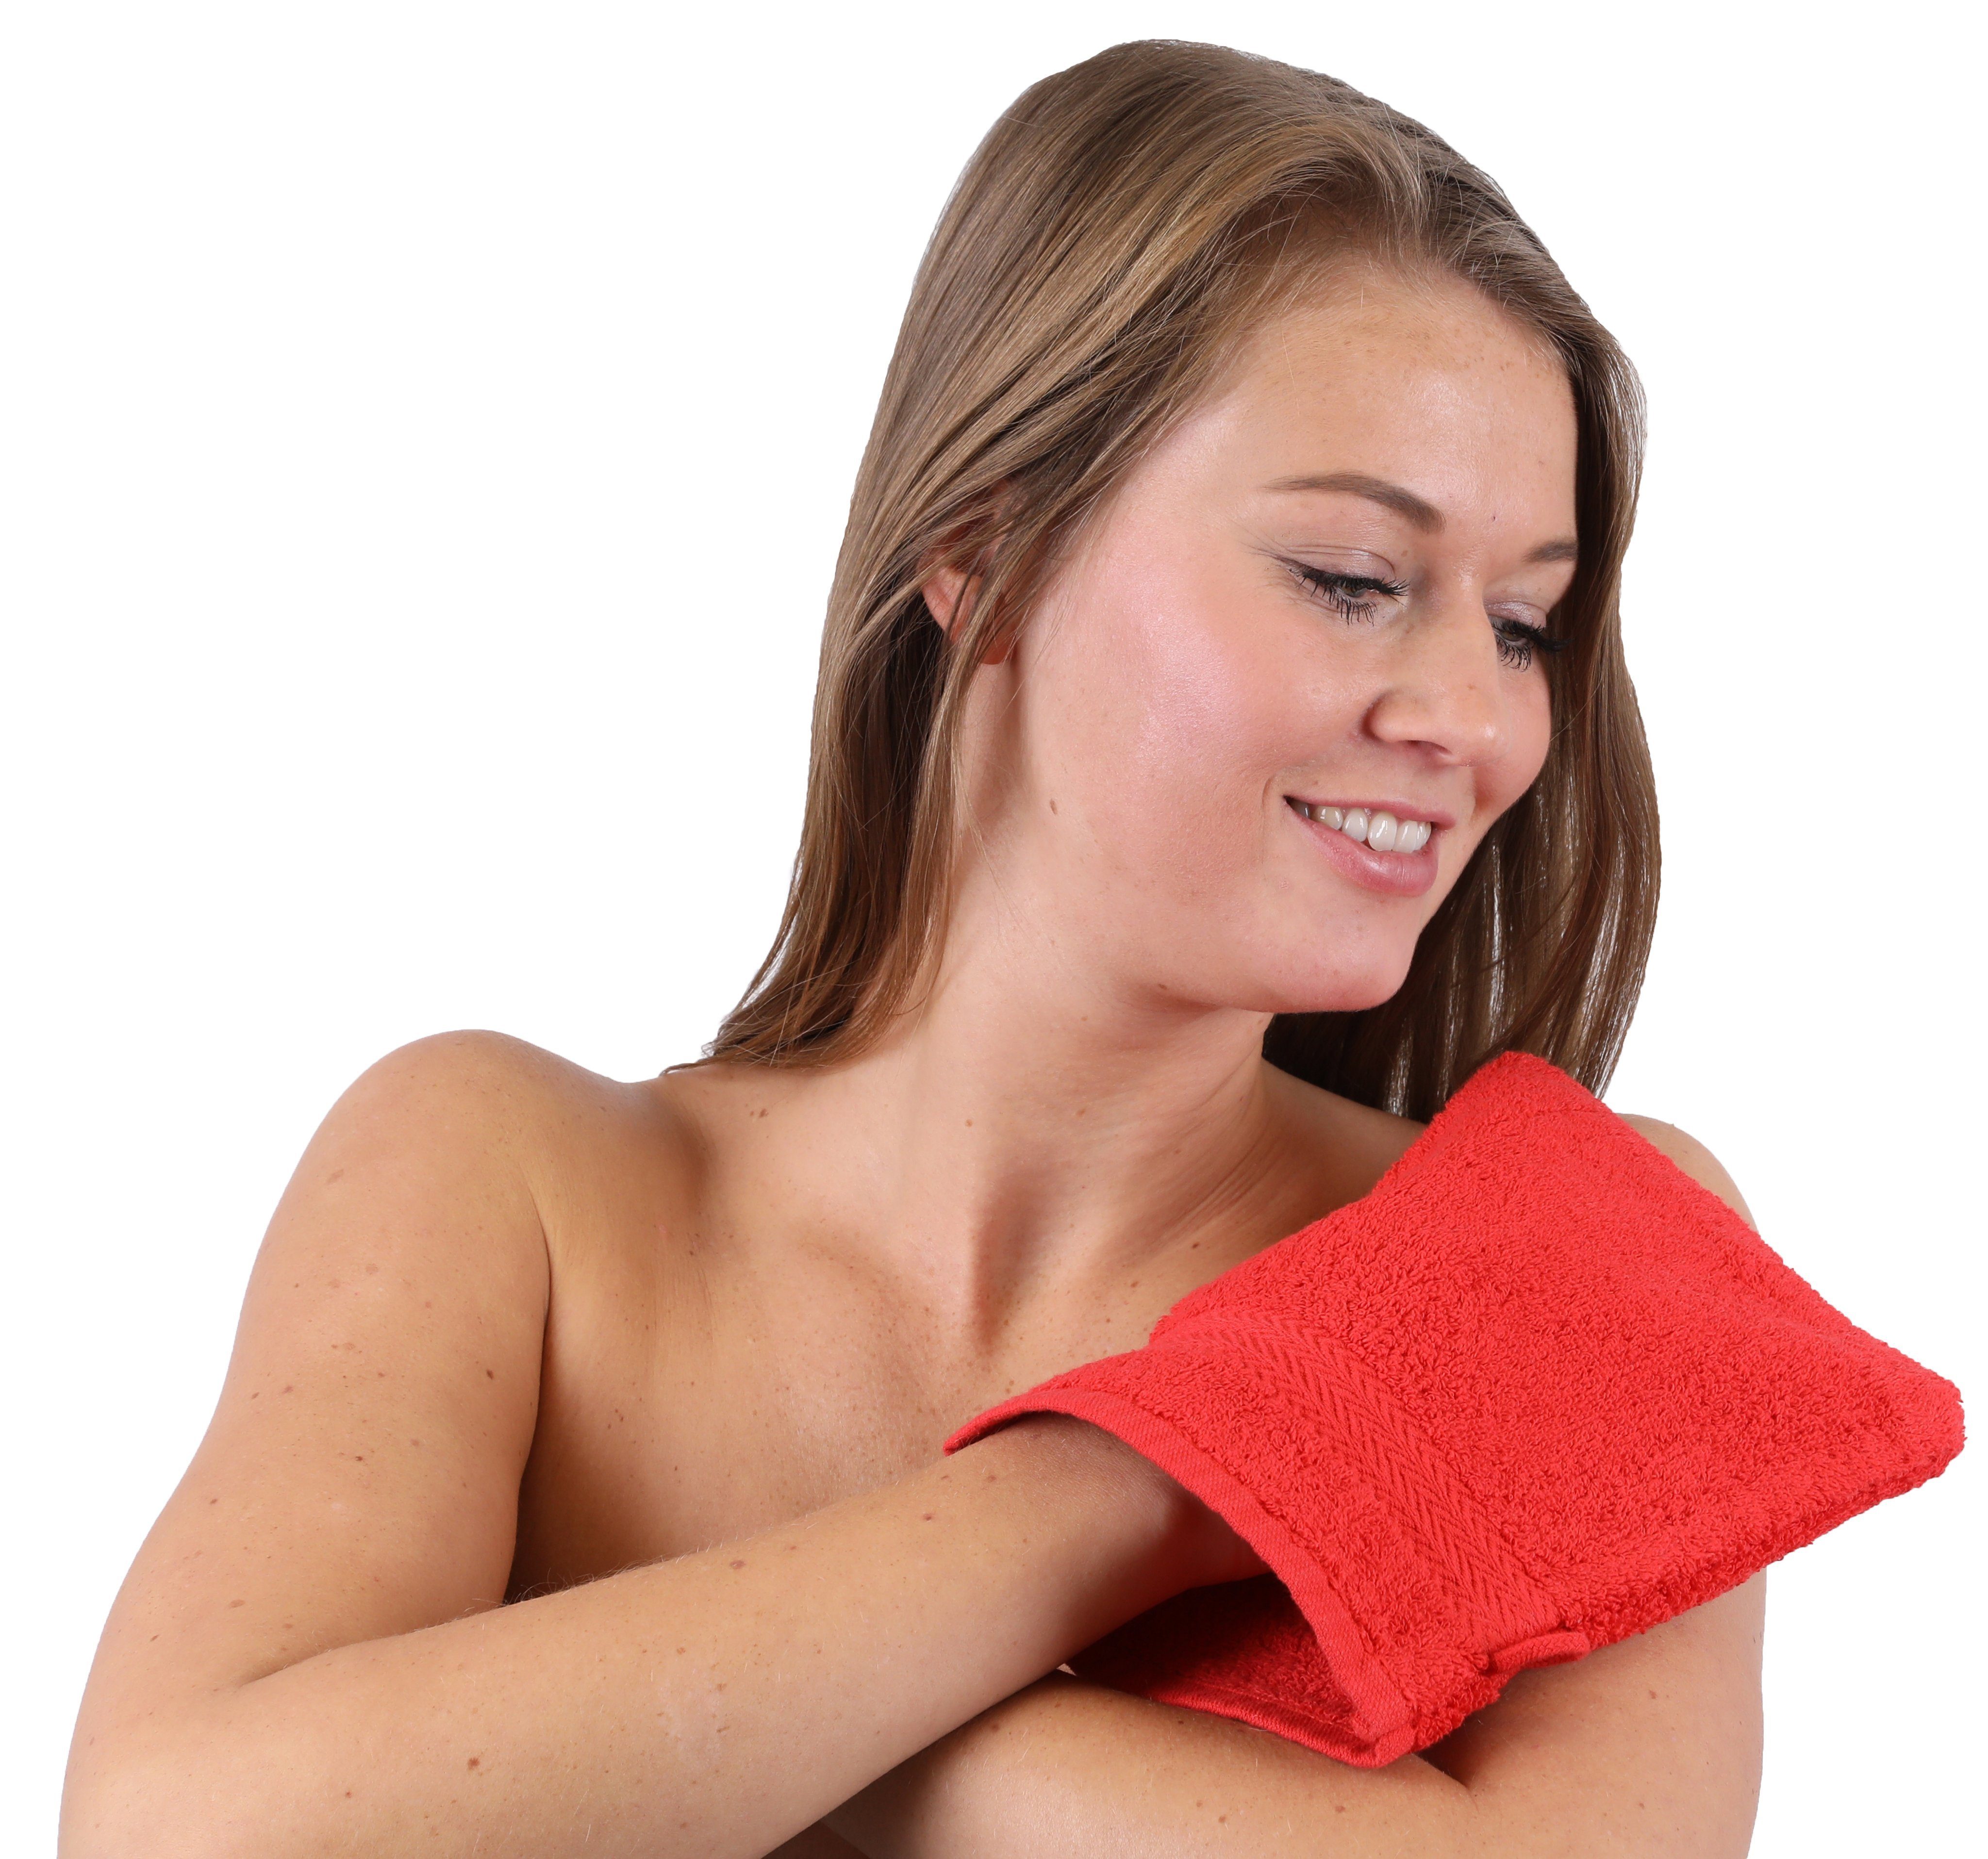 Heimtextilien Handtuch-Sets Betz Handtuch Set 10-TLG. Handtuch-Set Premium 100% Baumwolle 2 Duschtücher 4 Handtücher 2 Gästetüch